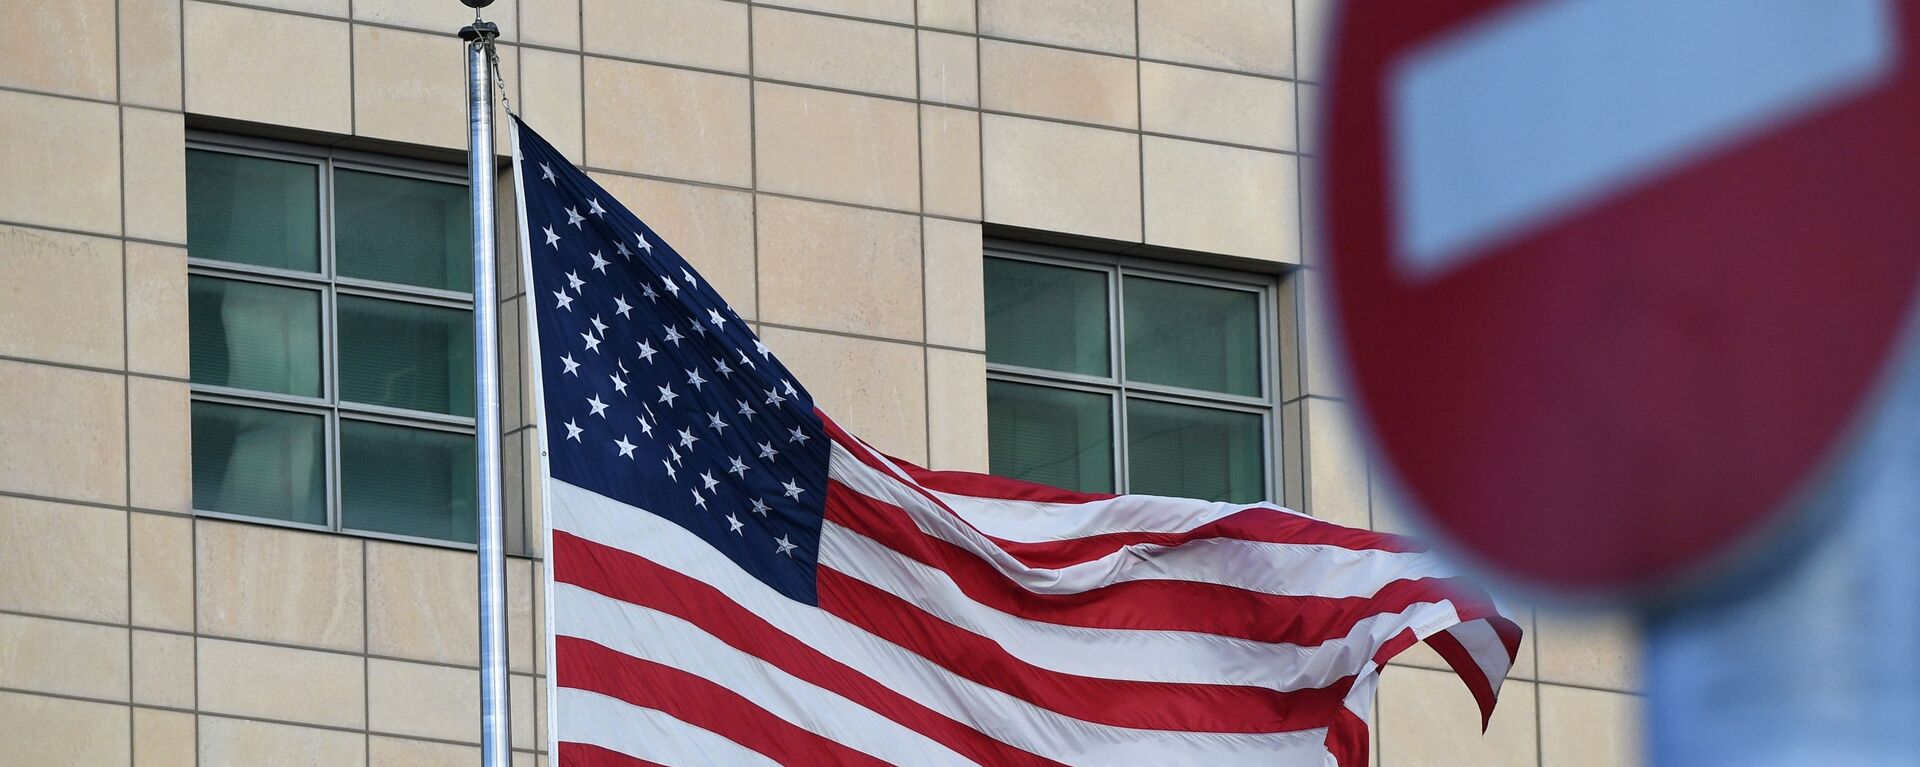 Государственный флаг США у американского посольства в Москве - Sputnik Латвия, 1920, 29.01.2022